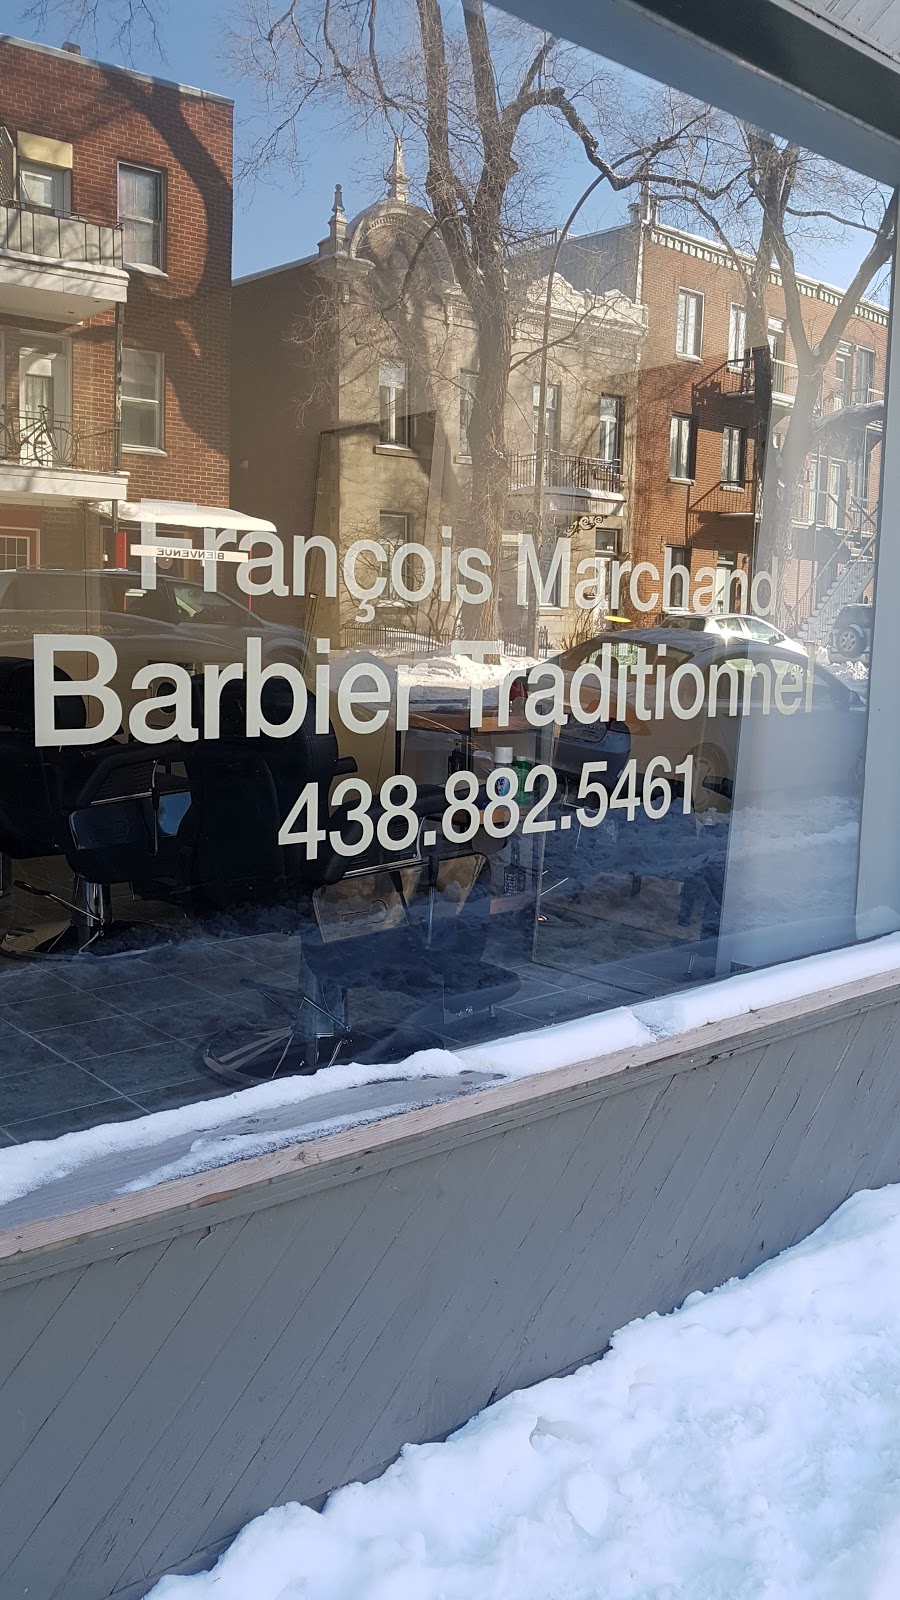 Barbier Traditionnel | 2030 Rue Gauthier, Montréal, QC H2K 1A7, Canada | Phone: (438) 882-5461